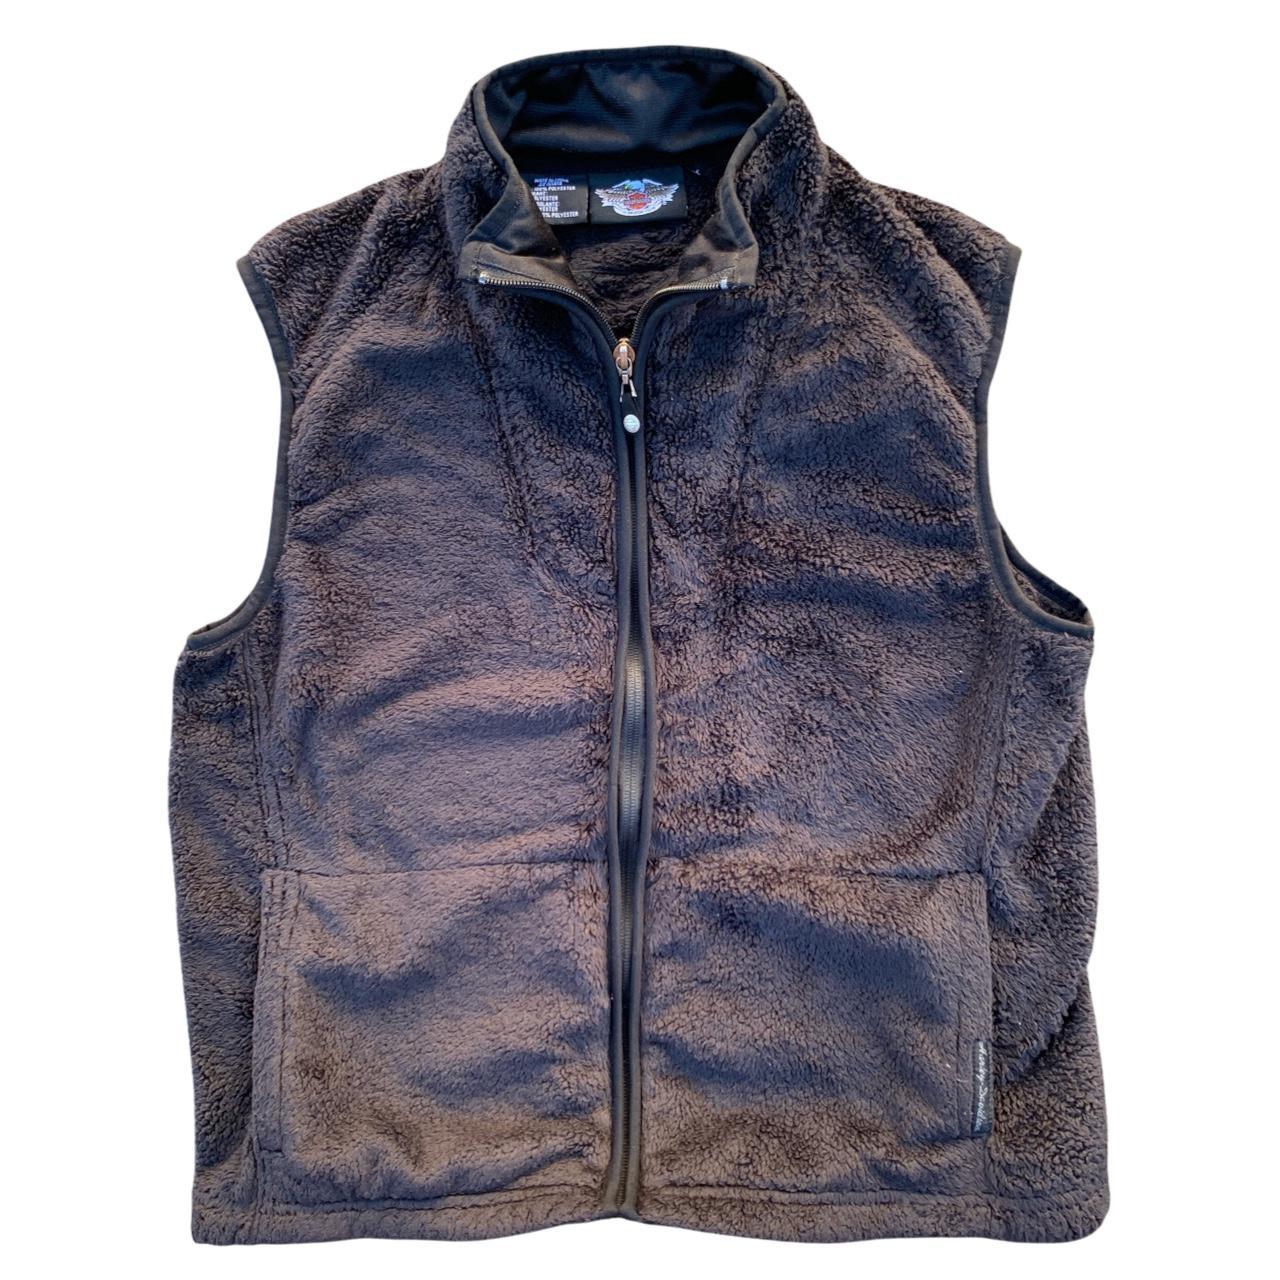 Harley Davidson zip up fuzzy vest Size: Medium (See... - Depop